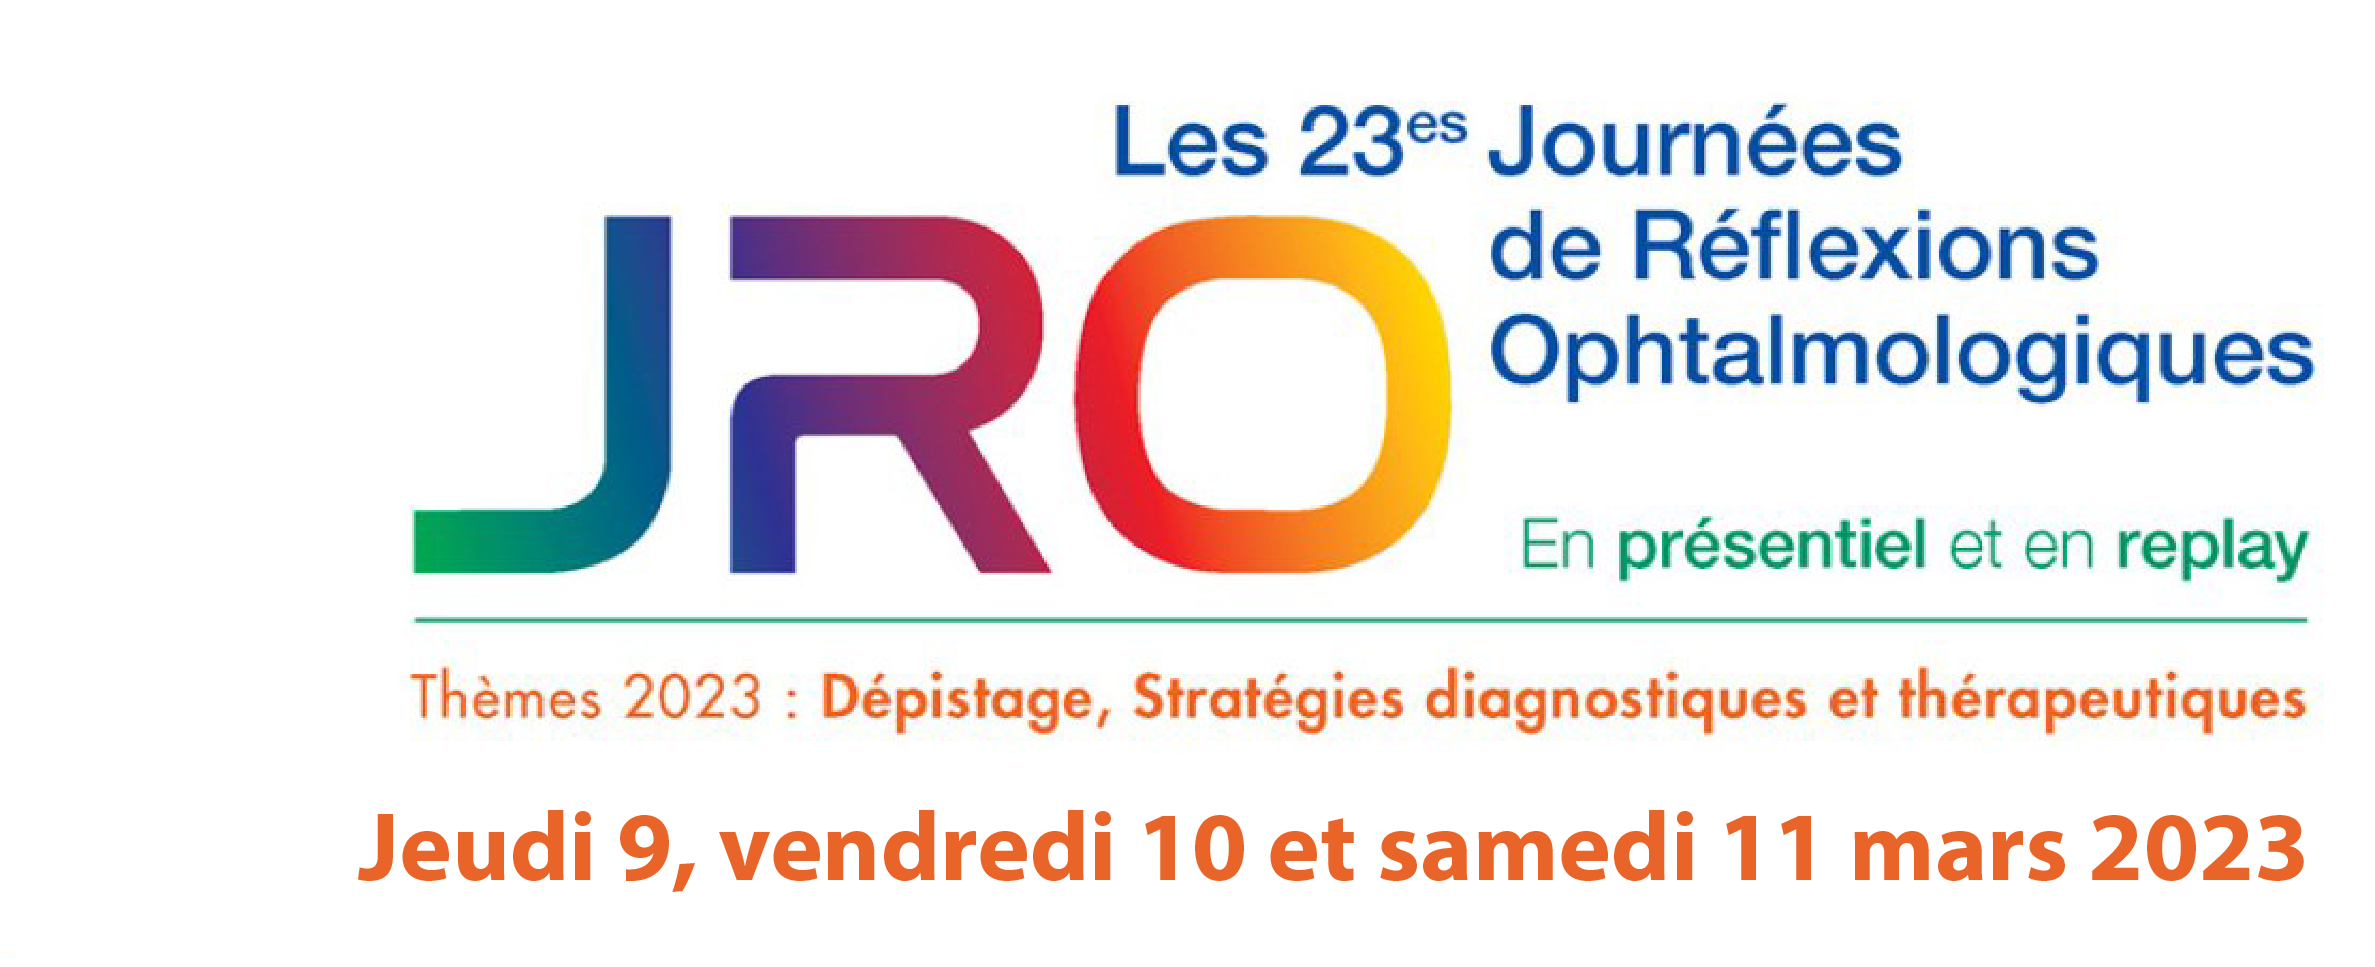 23es Journées de Réflexions Ophtalmologiques - JRO 2023